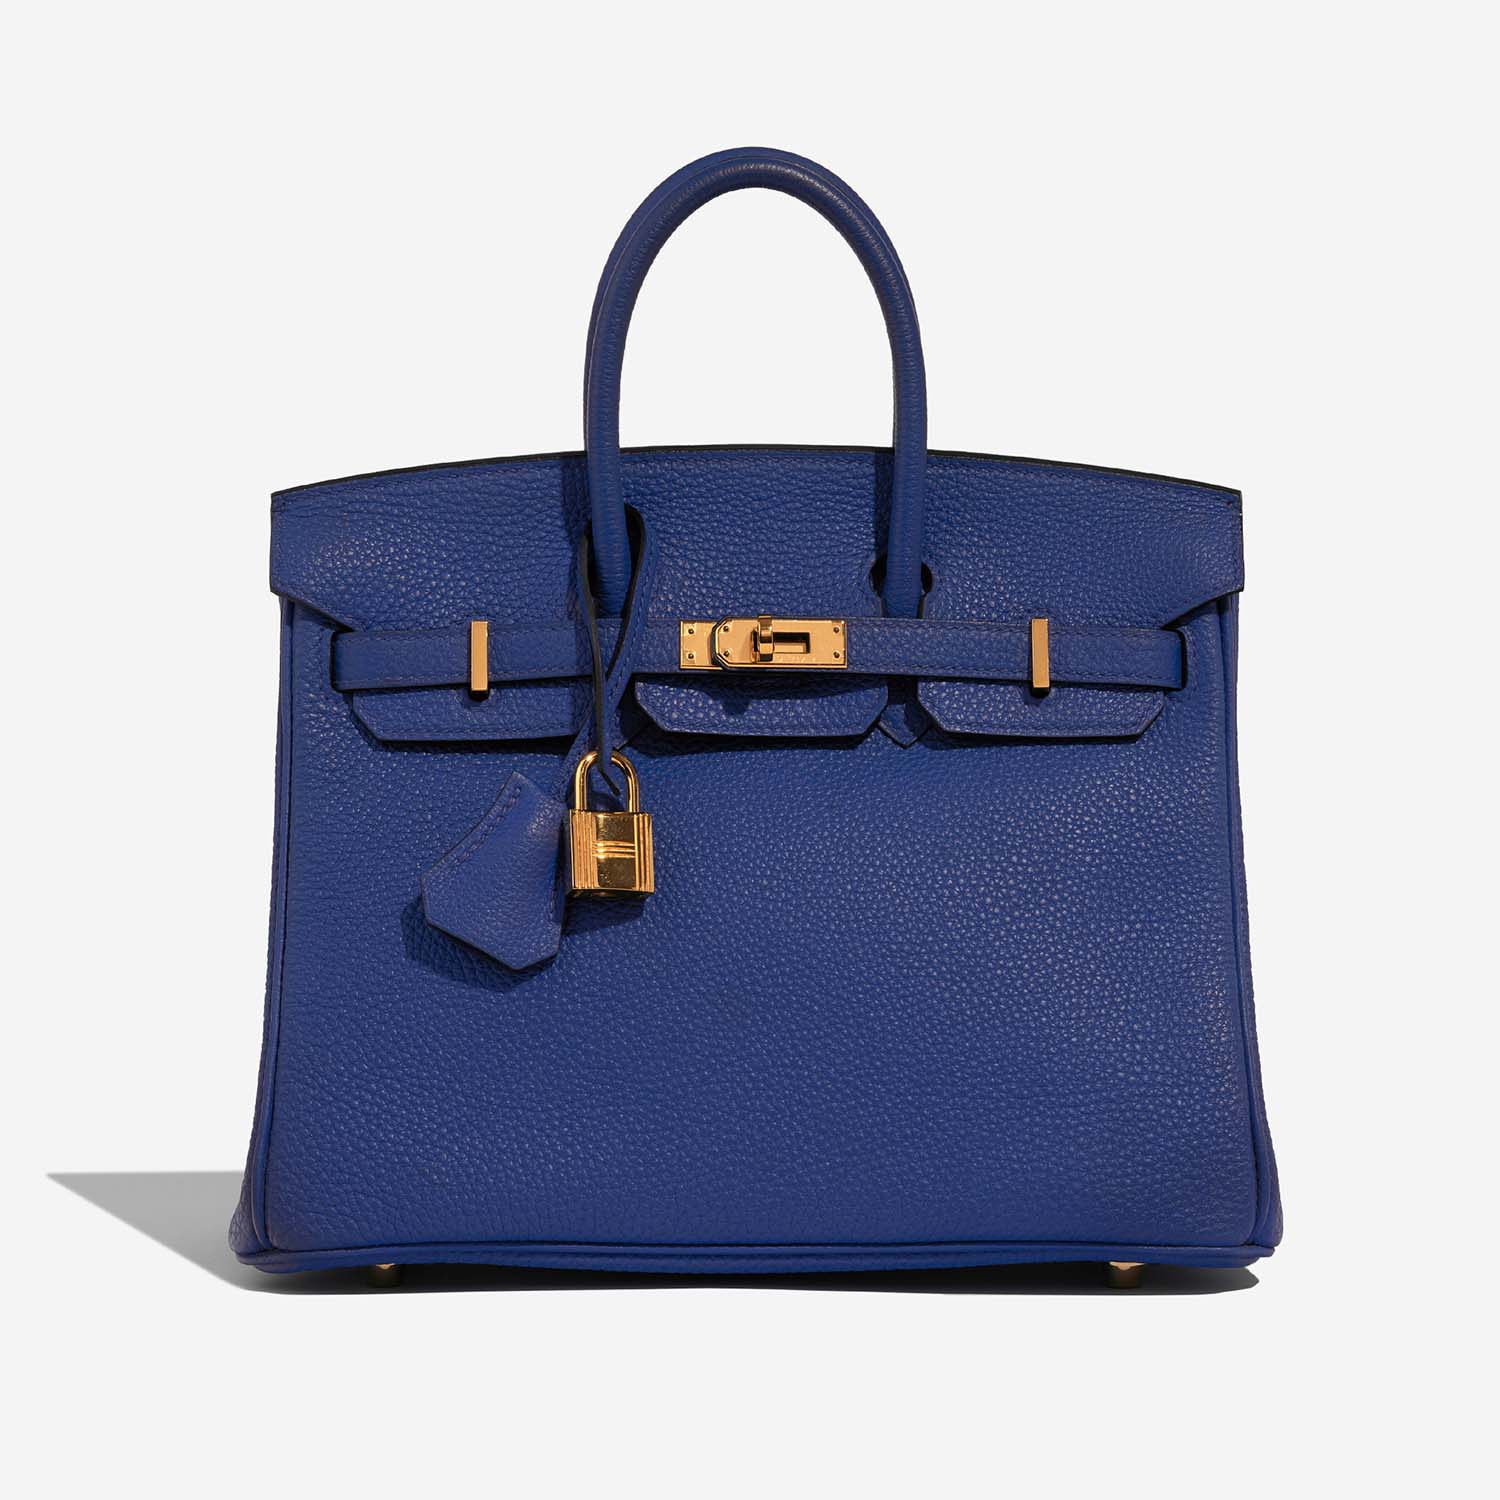 Hermès Birkin 25 BleuElectrique 2F S | Verkaufen Sie Ihre Designertasche auf Saclab.com